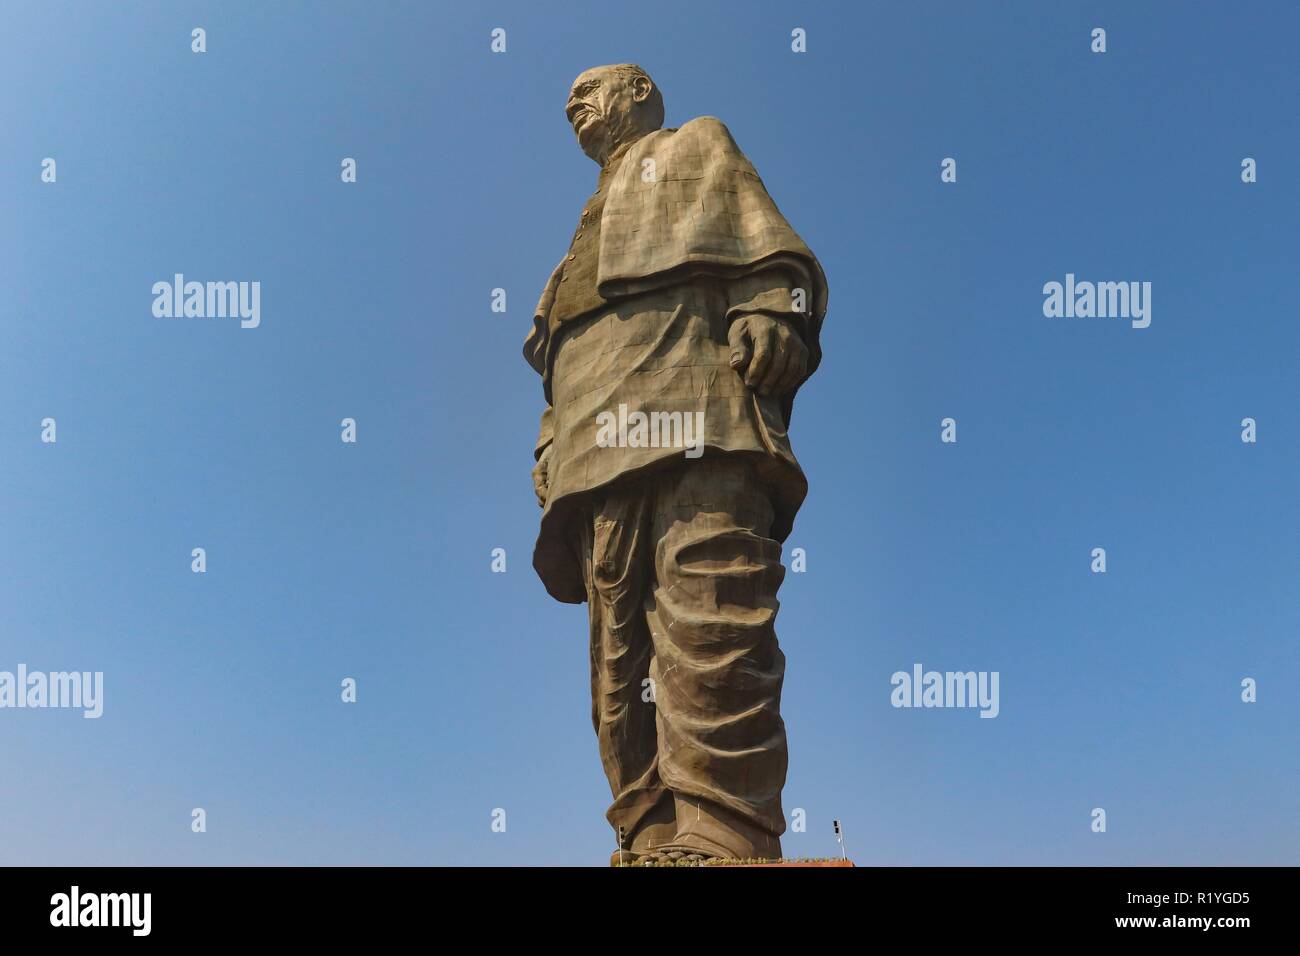 Le plus haut du monde, 'Statue de la statue de l'unité",à une hauteur de 182 mètres de Sri Sardar Vallabhai Patel situé près de Vadodara, Gujarat/Inde Banque D'Images